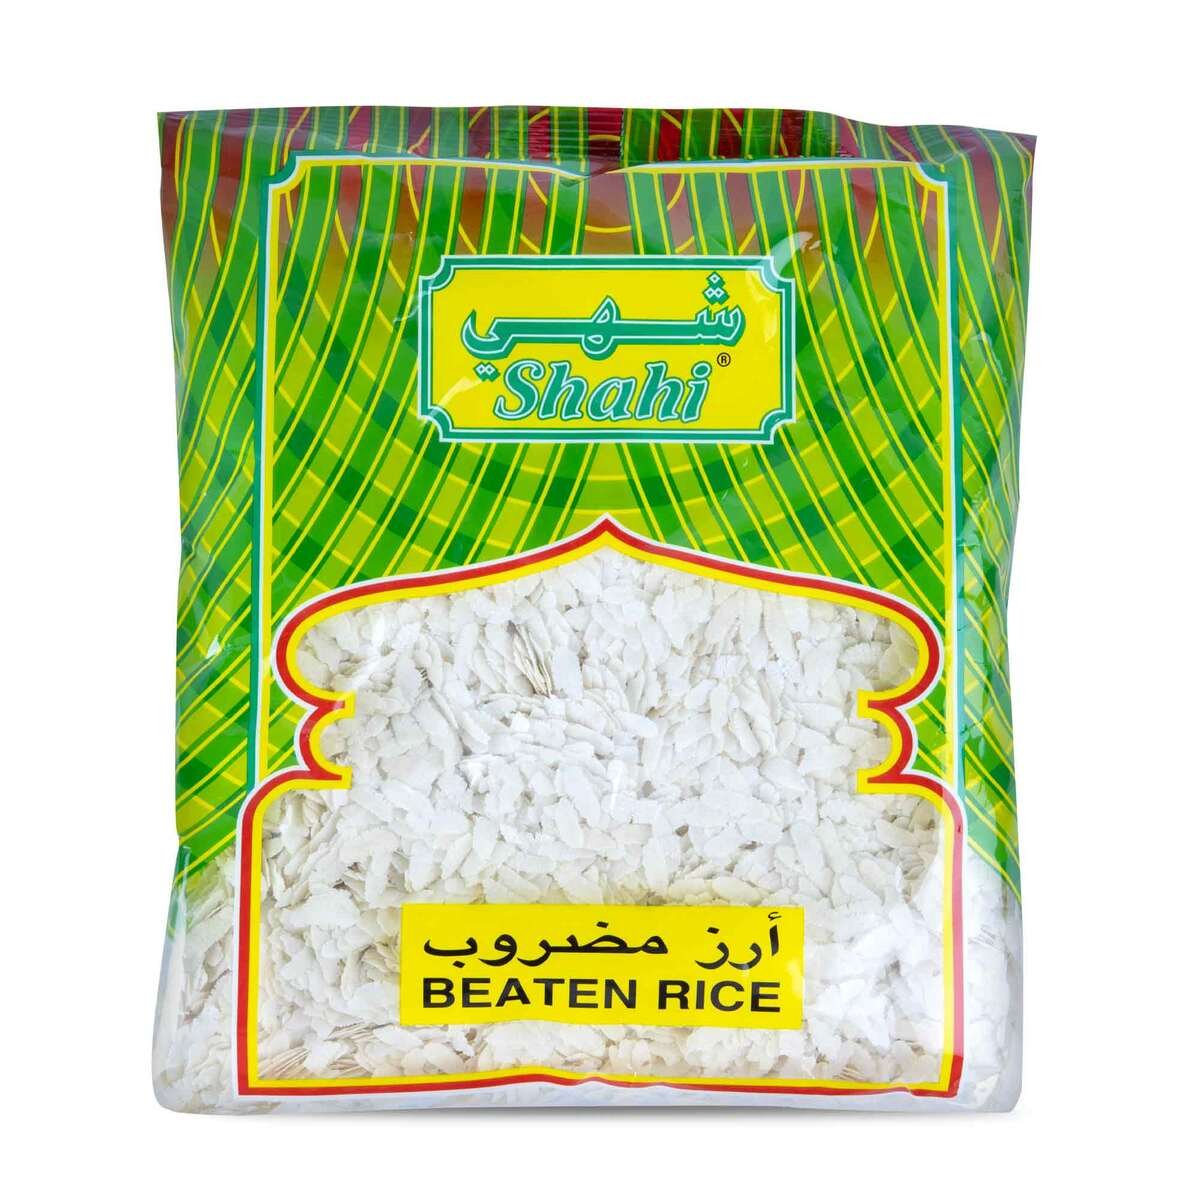 Shahi Beaten Rice 500g